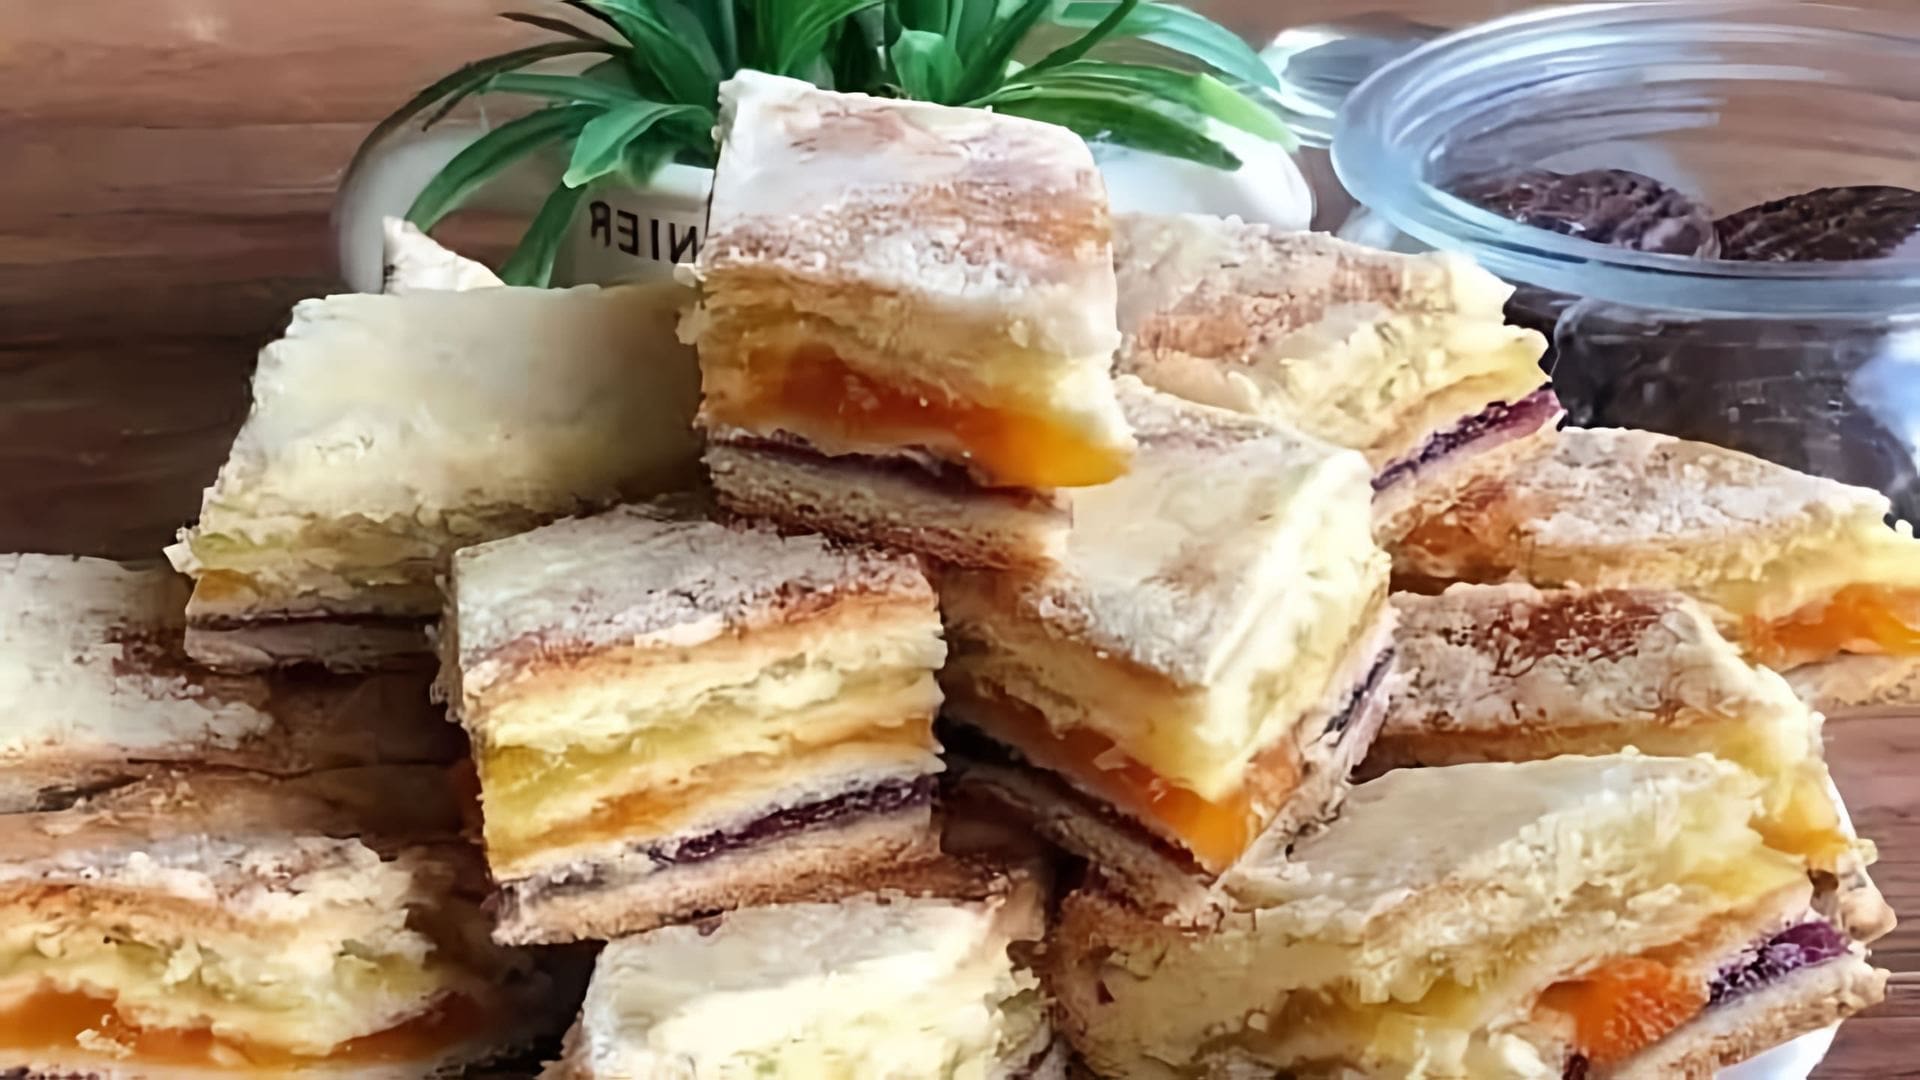 Татарский трёхслойный пирог - это традиционное блюдо татарской кухни, которое готовится из нескольких слоев теста и начинки